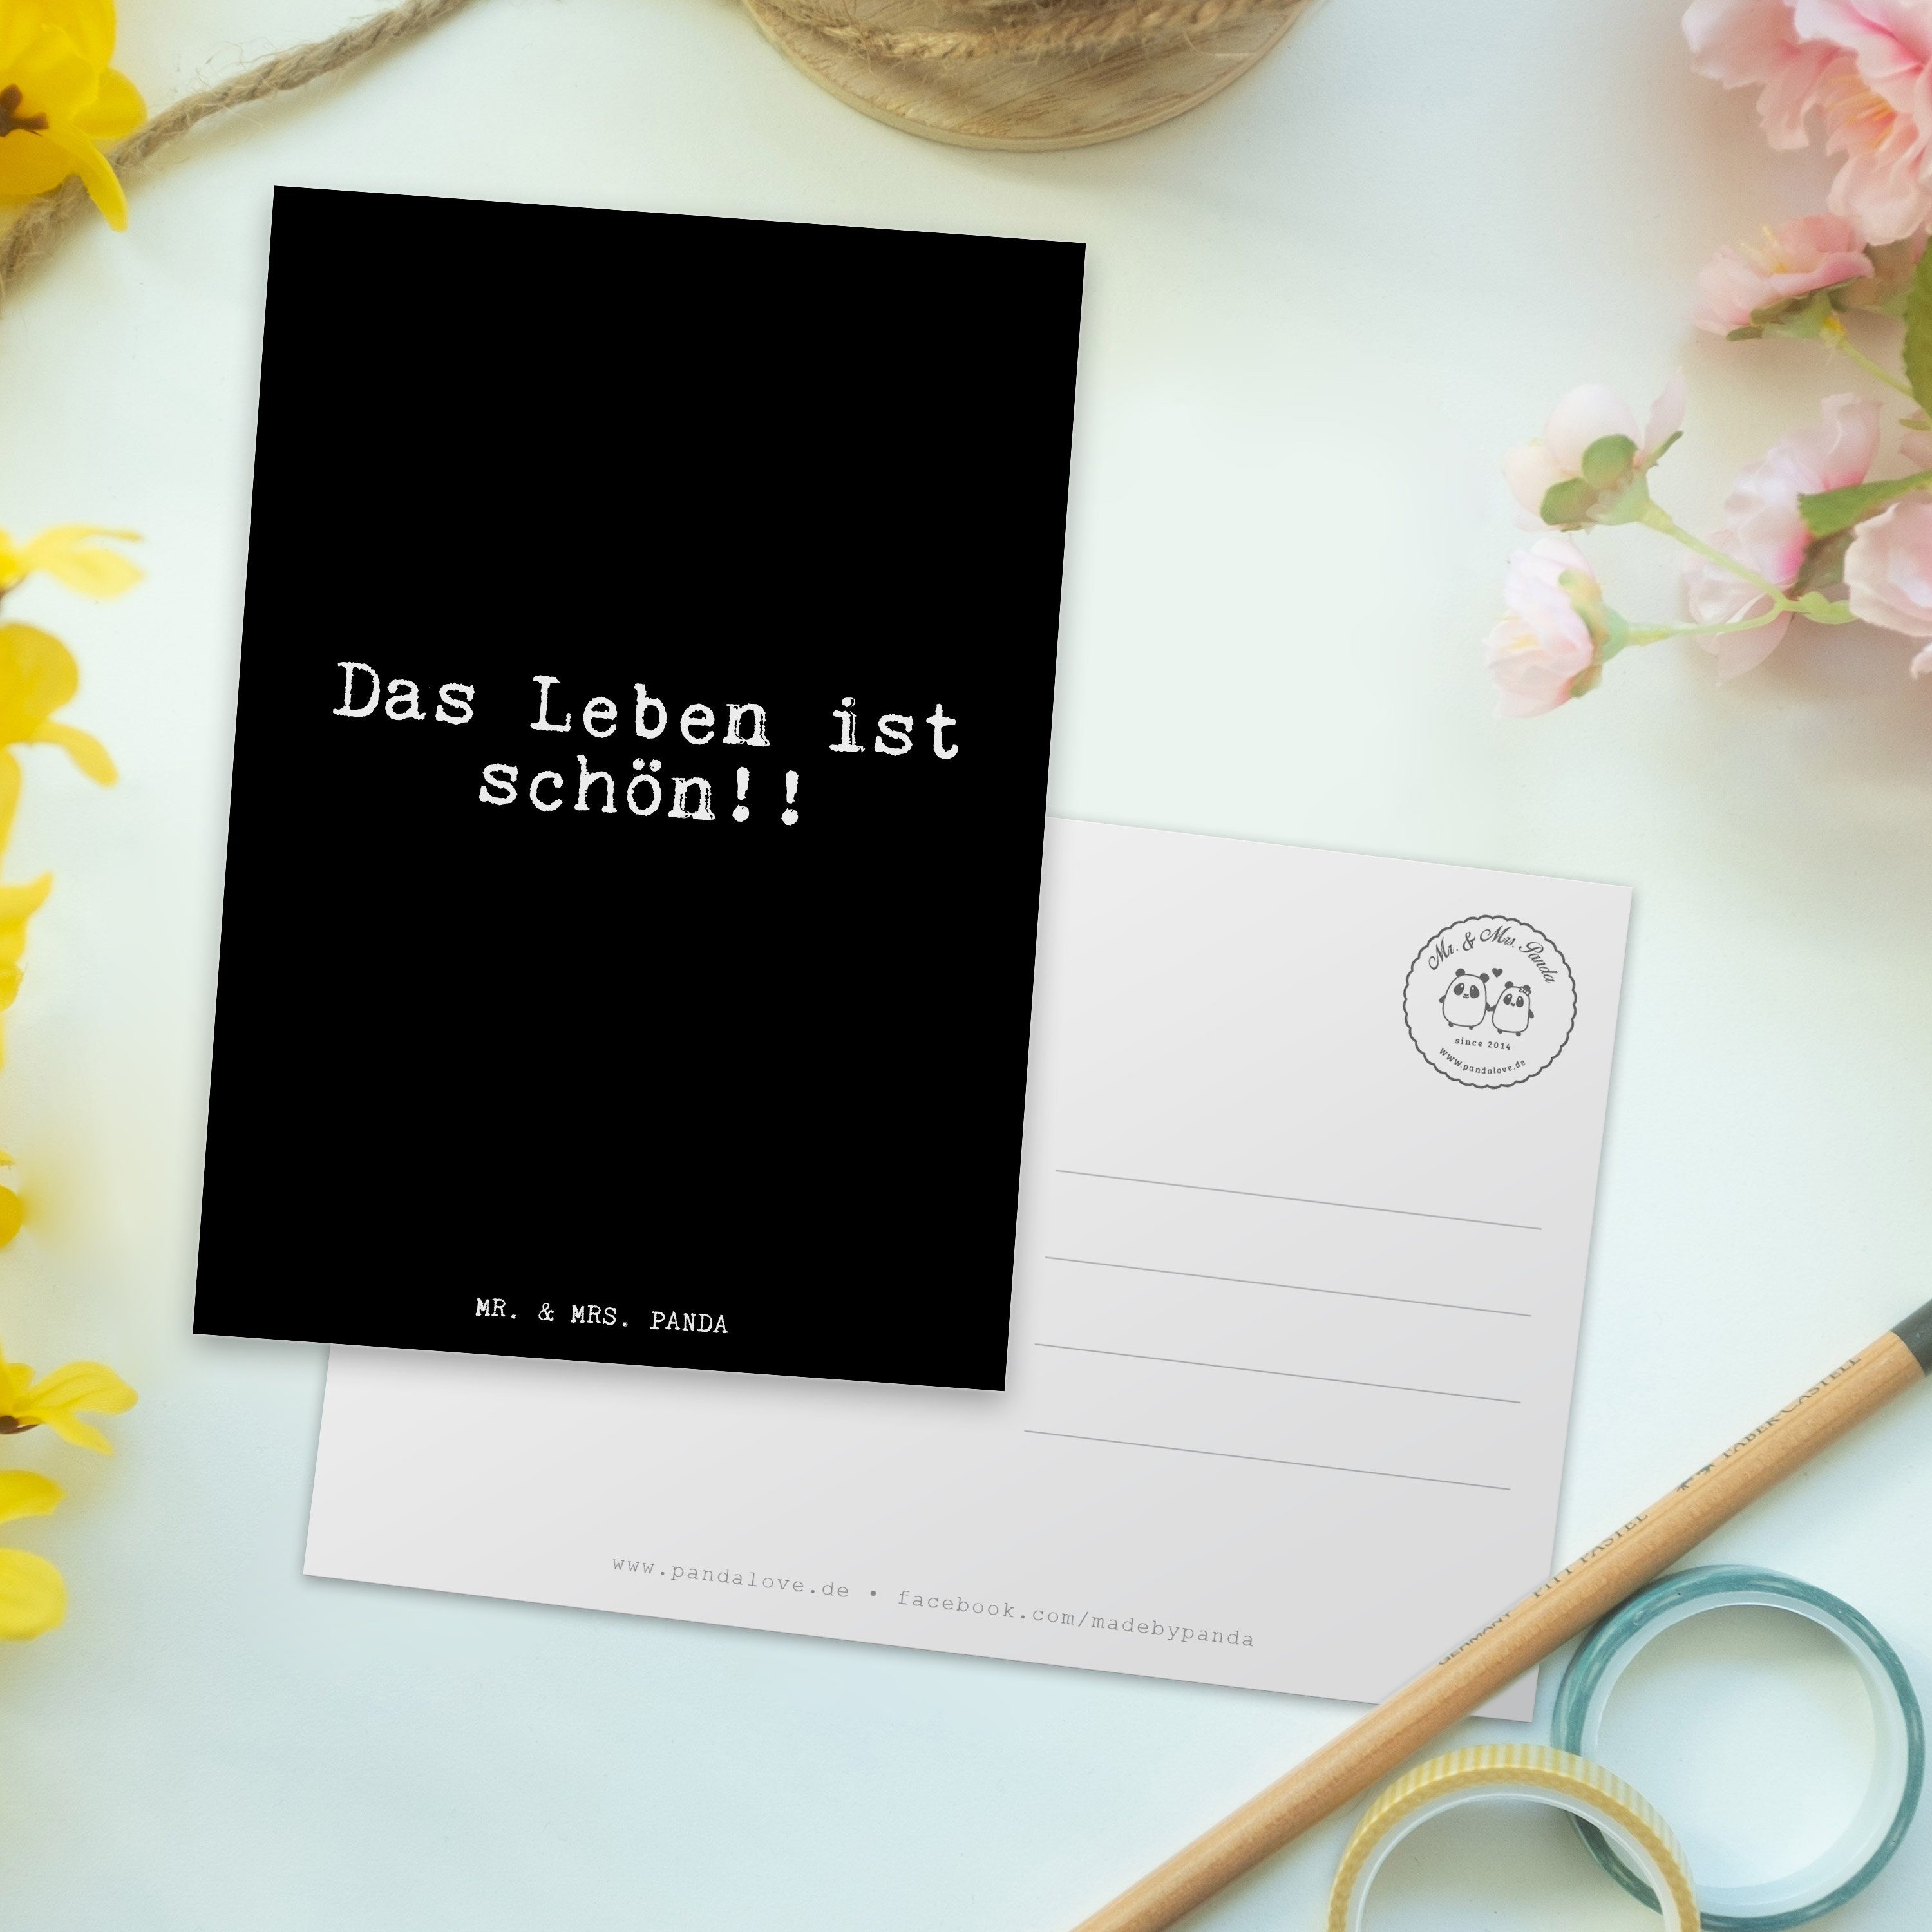 Glizer - Spr Mr. Schwarz - Geschenk, Das & Leben Postkarte Mrs. Panda ist schön!!... Motivation,